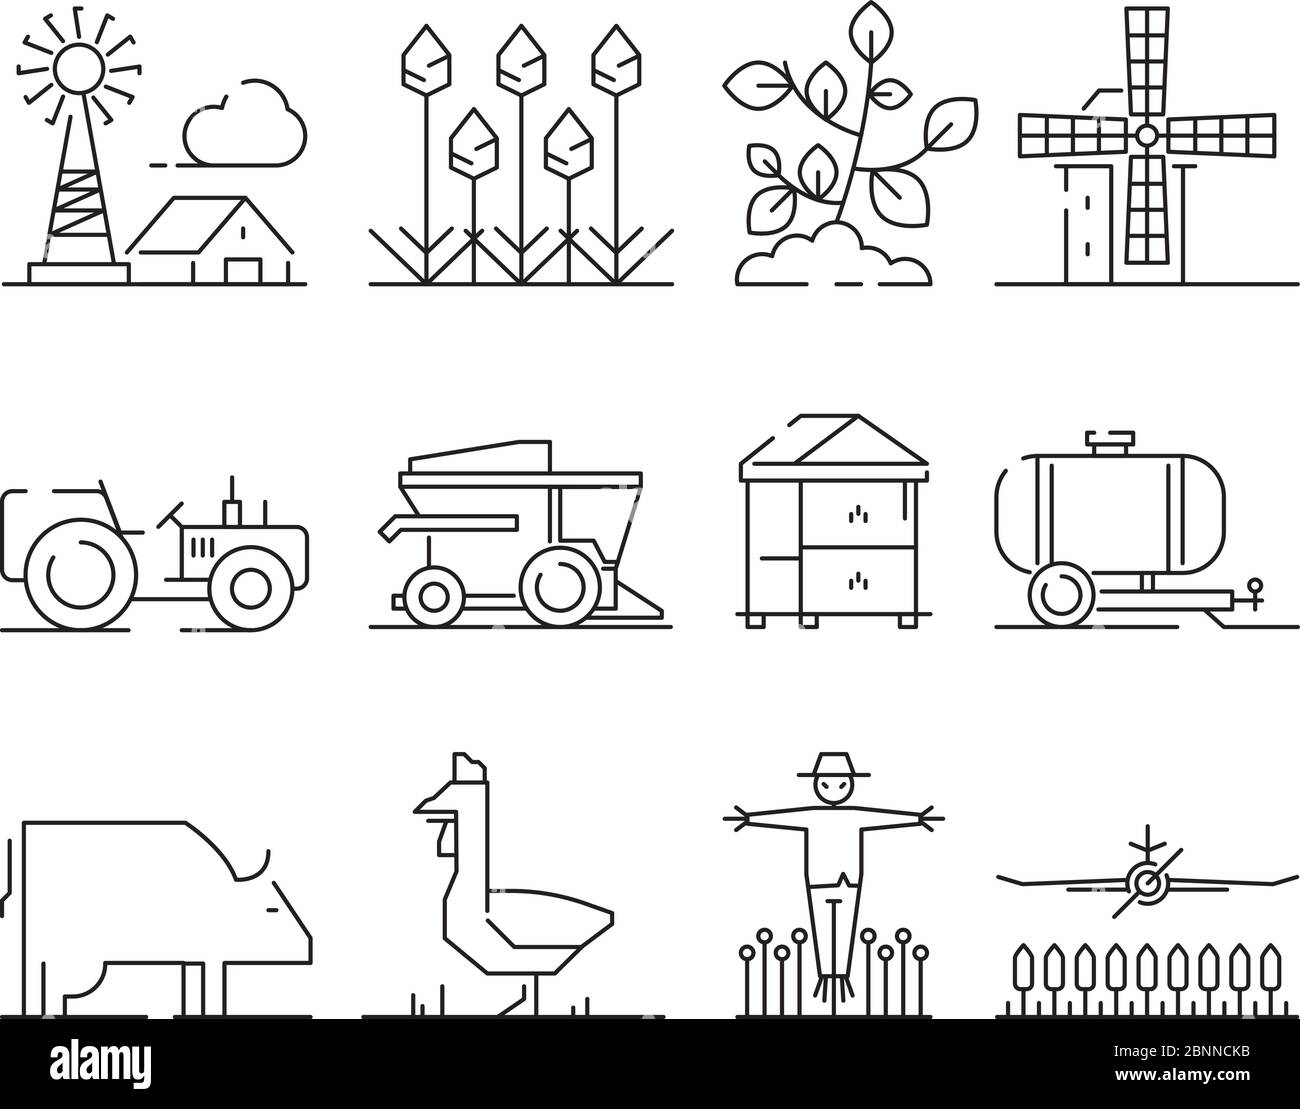 Lineares Farmsymbol. Landwirtschaftlichkeit Dorf Felder Weizen Symbole Vektor isoliert Stock Vektor